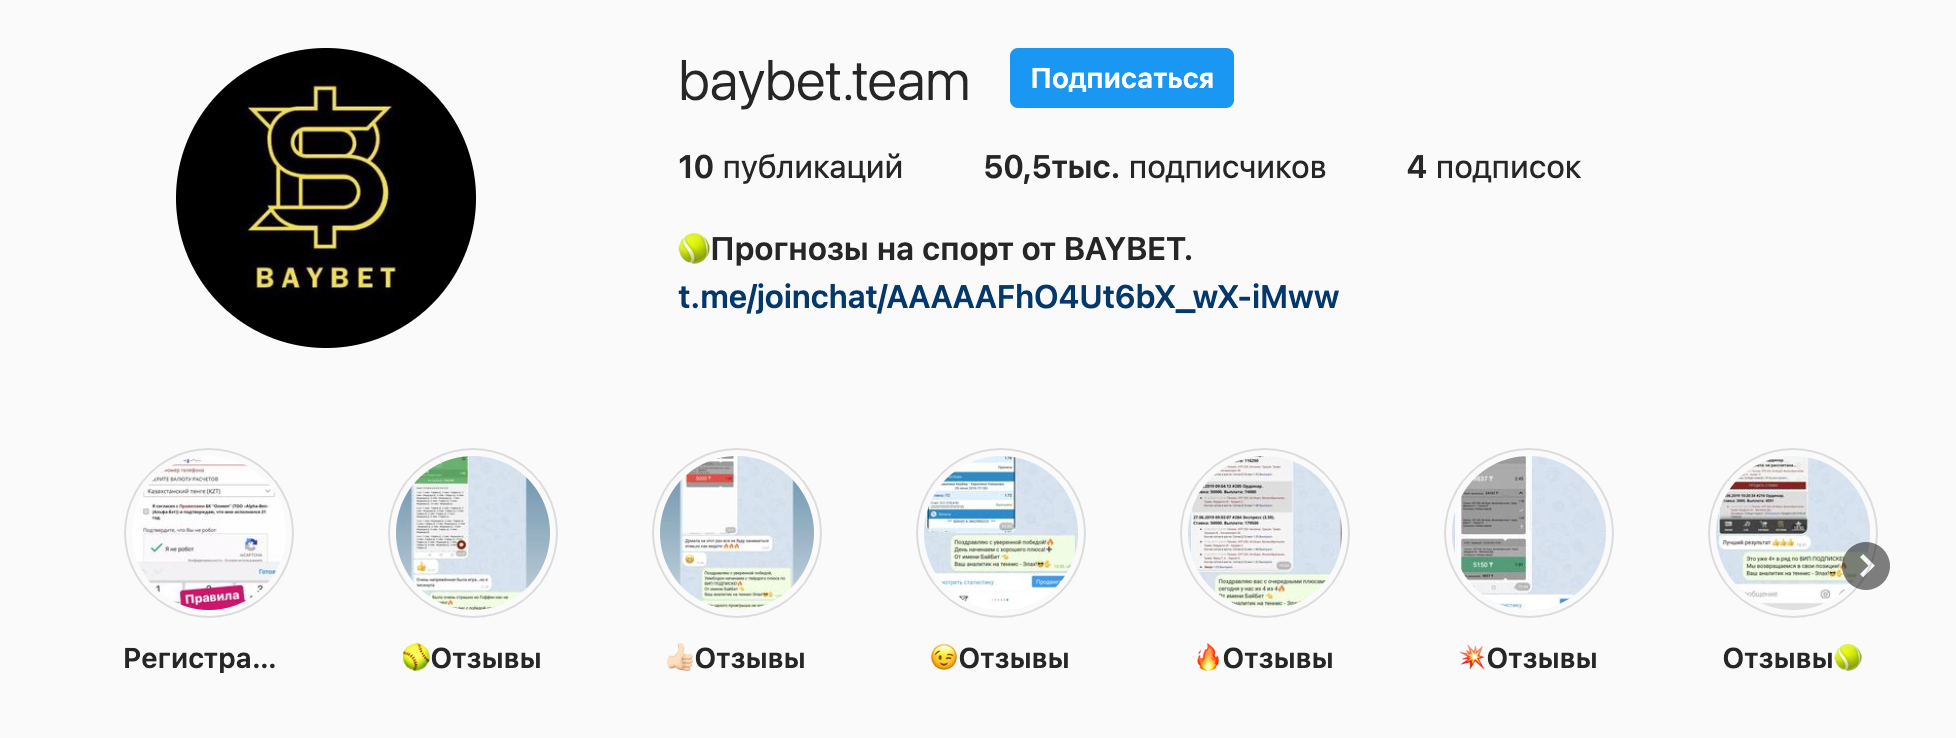 Инстаграм BayBet